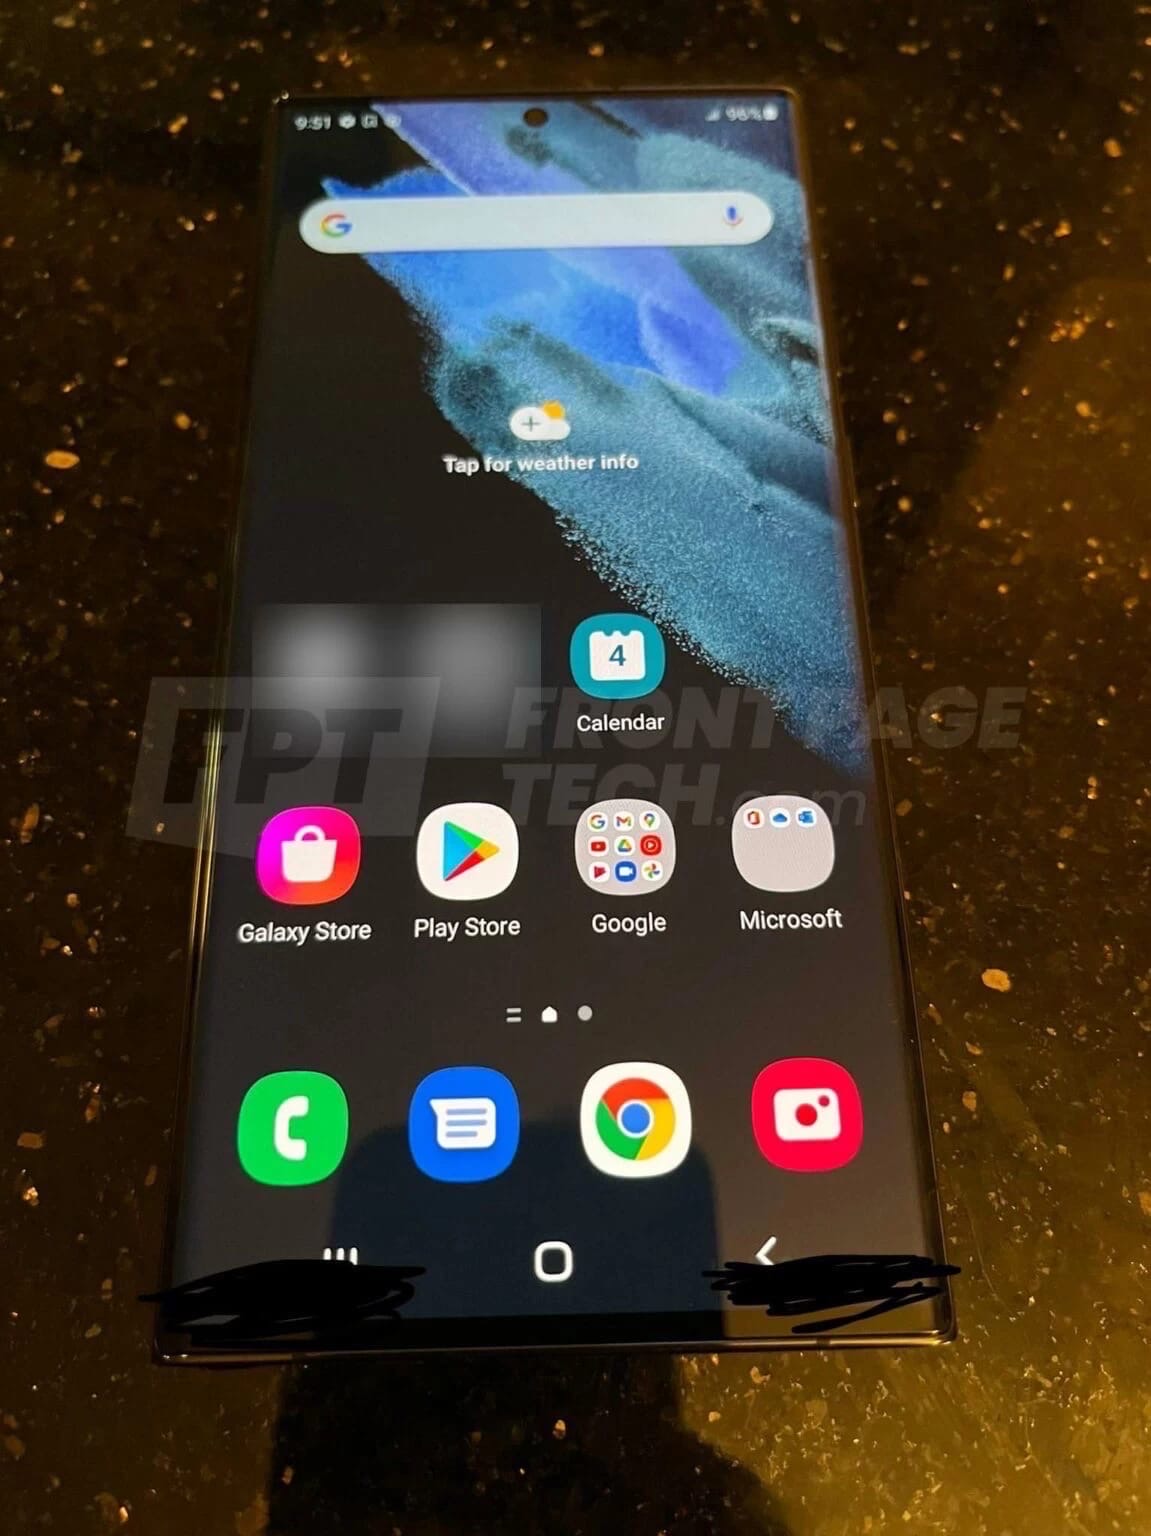 Немного слухов: инсайдер Джон Проссер опубликовал первые реальные фотографии Samsung Galaxy S22 Ultra со встроенным стилусом S Pen.